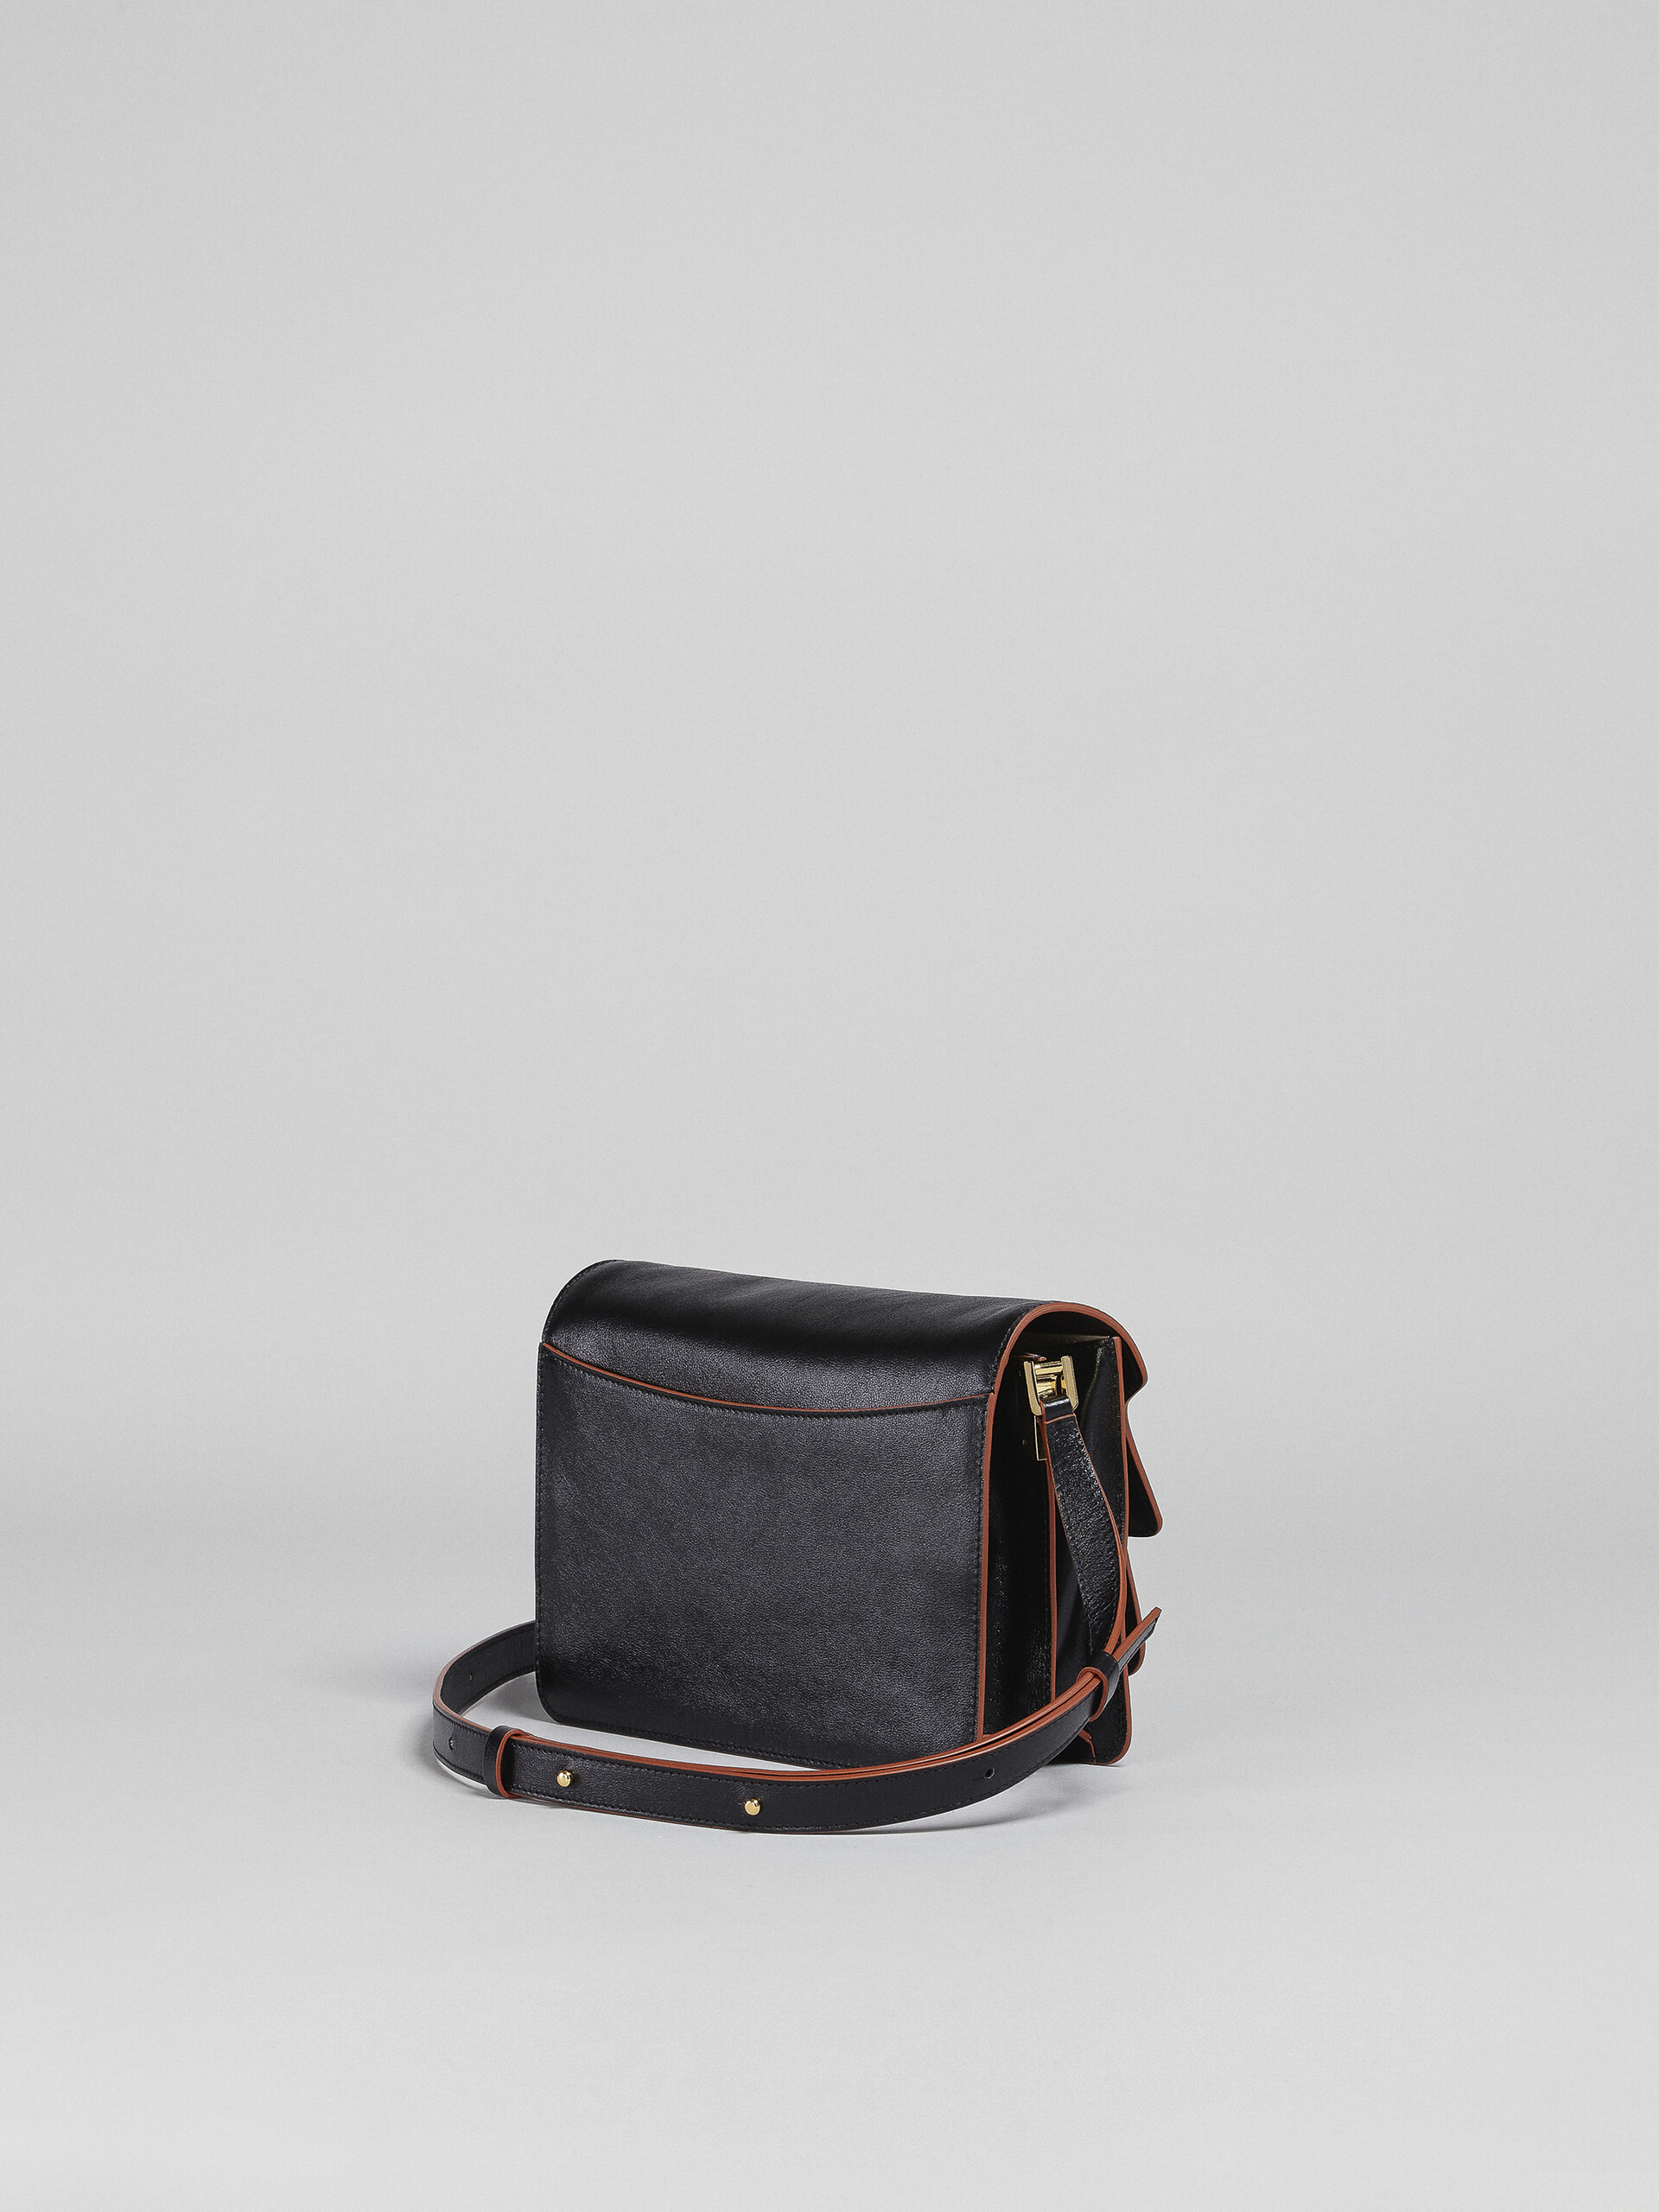 TRUNK SOFT medium bag in black leather - Shoulder Bag - Image 3